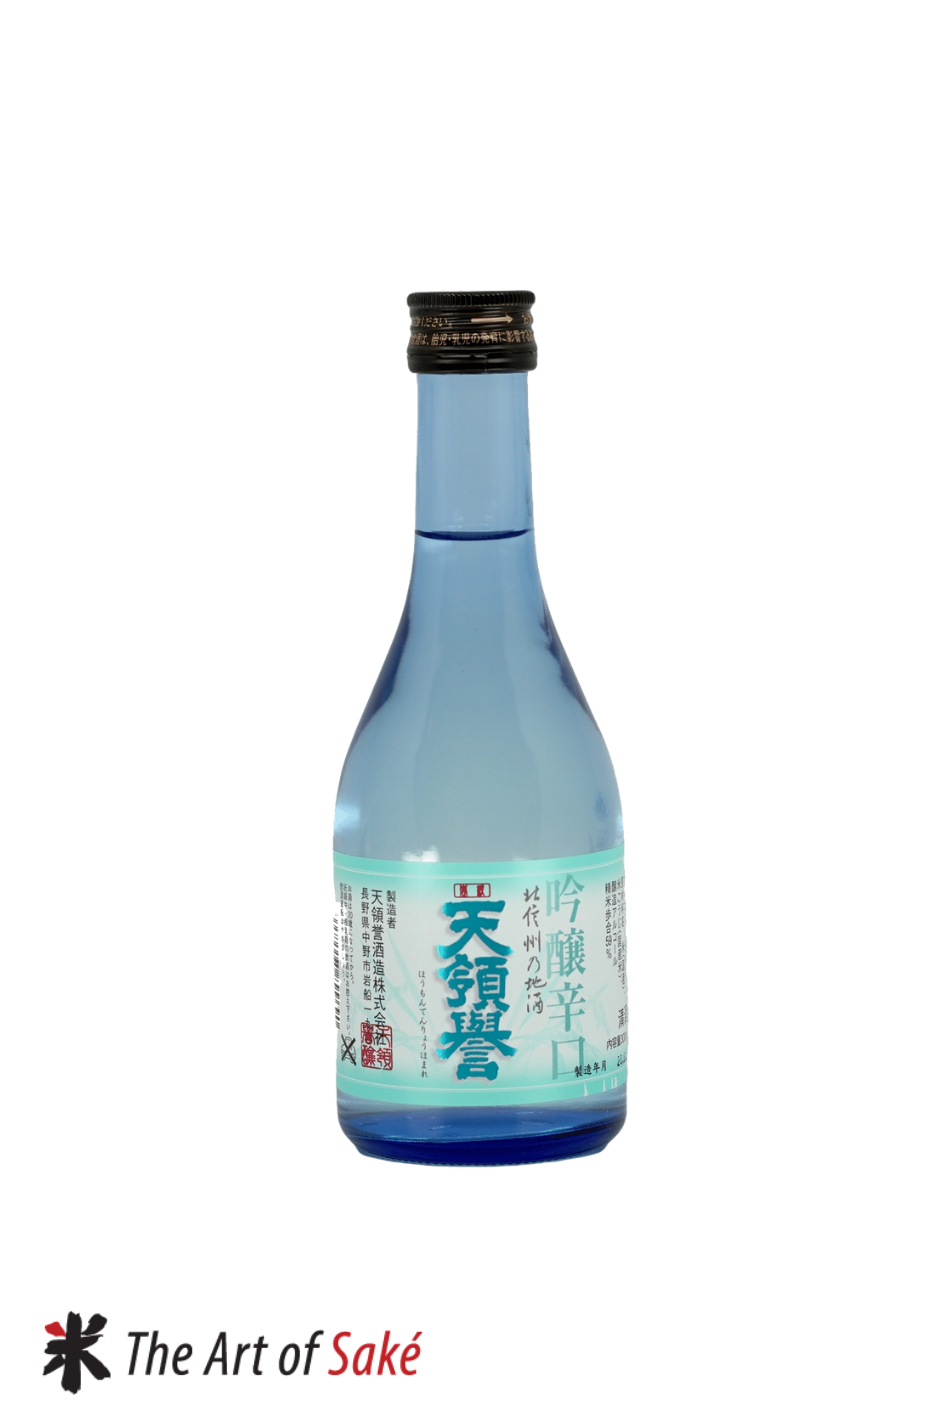 Tenryohomare Karakuchi Ginjo